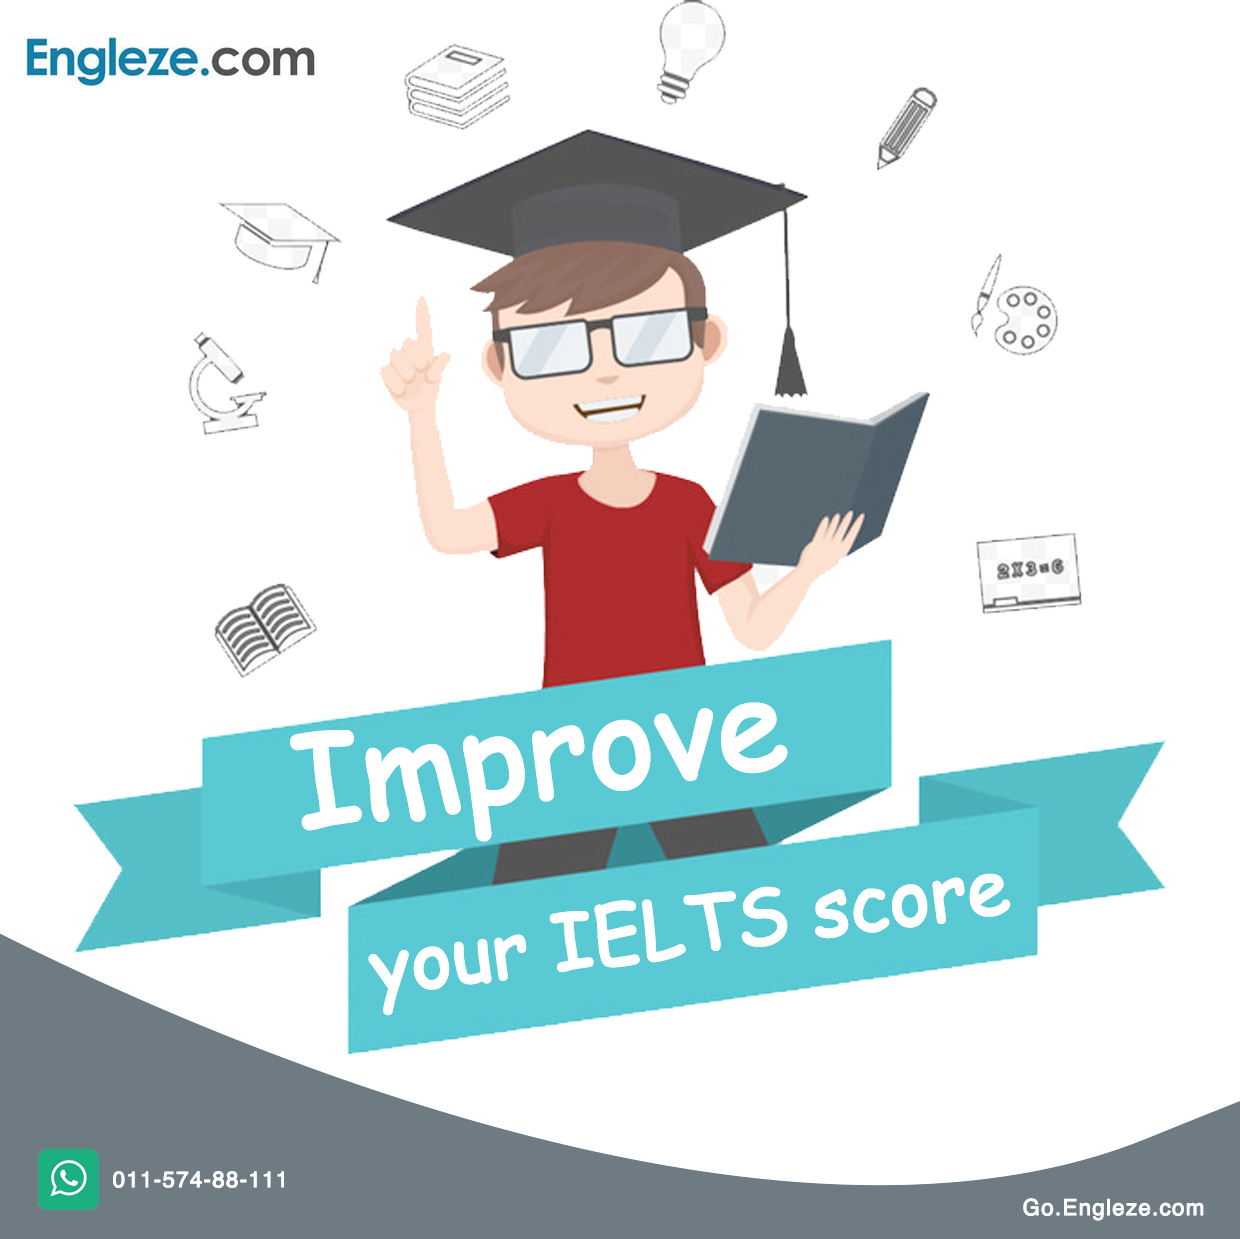 Improve your IELTS score - Engleze.com